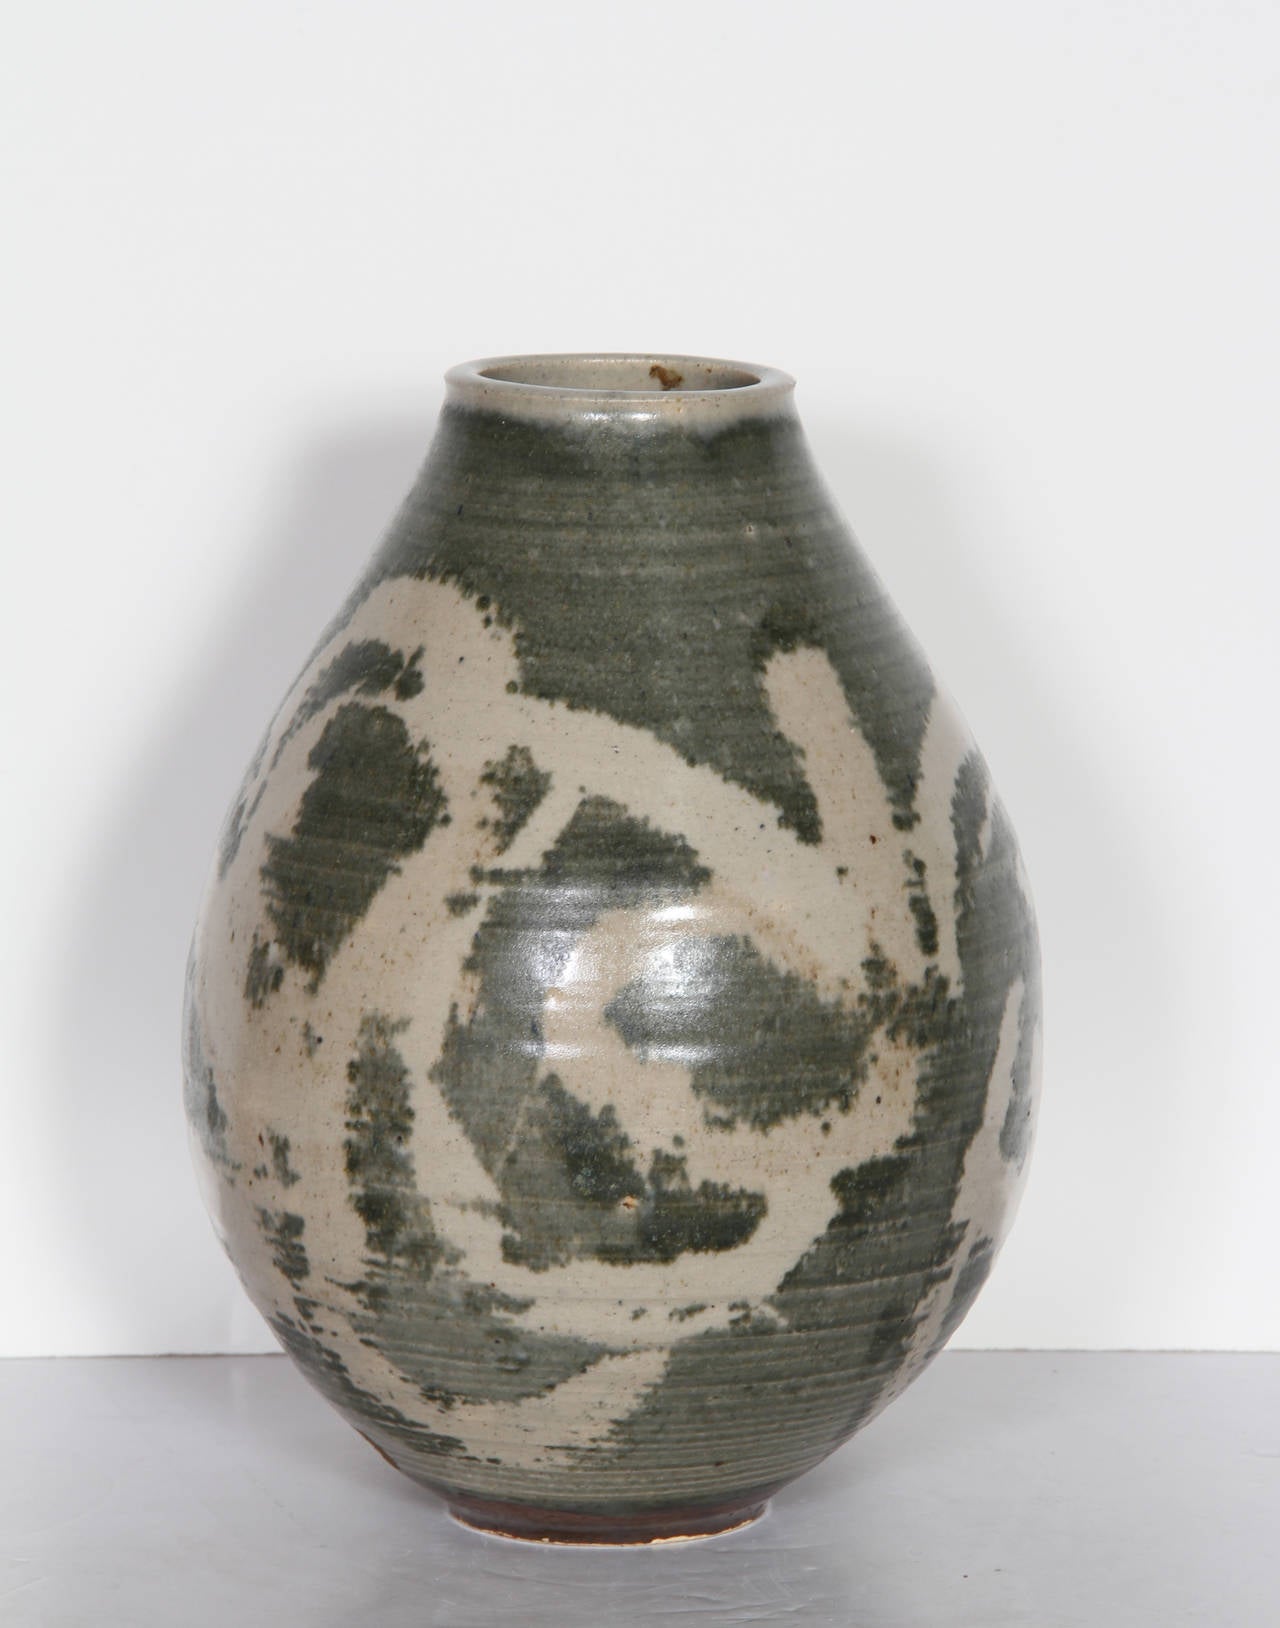 Unknown Still-Life Sculpture - Glazed Green Ceramic Vase